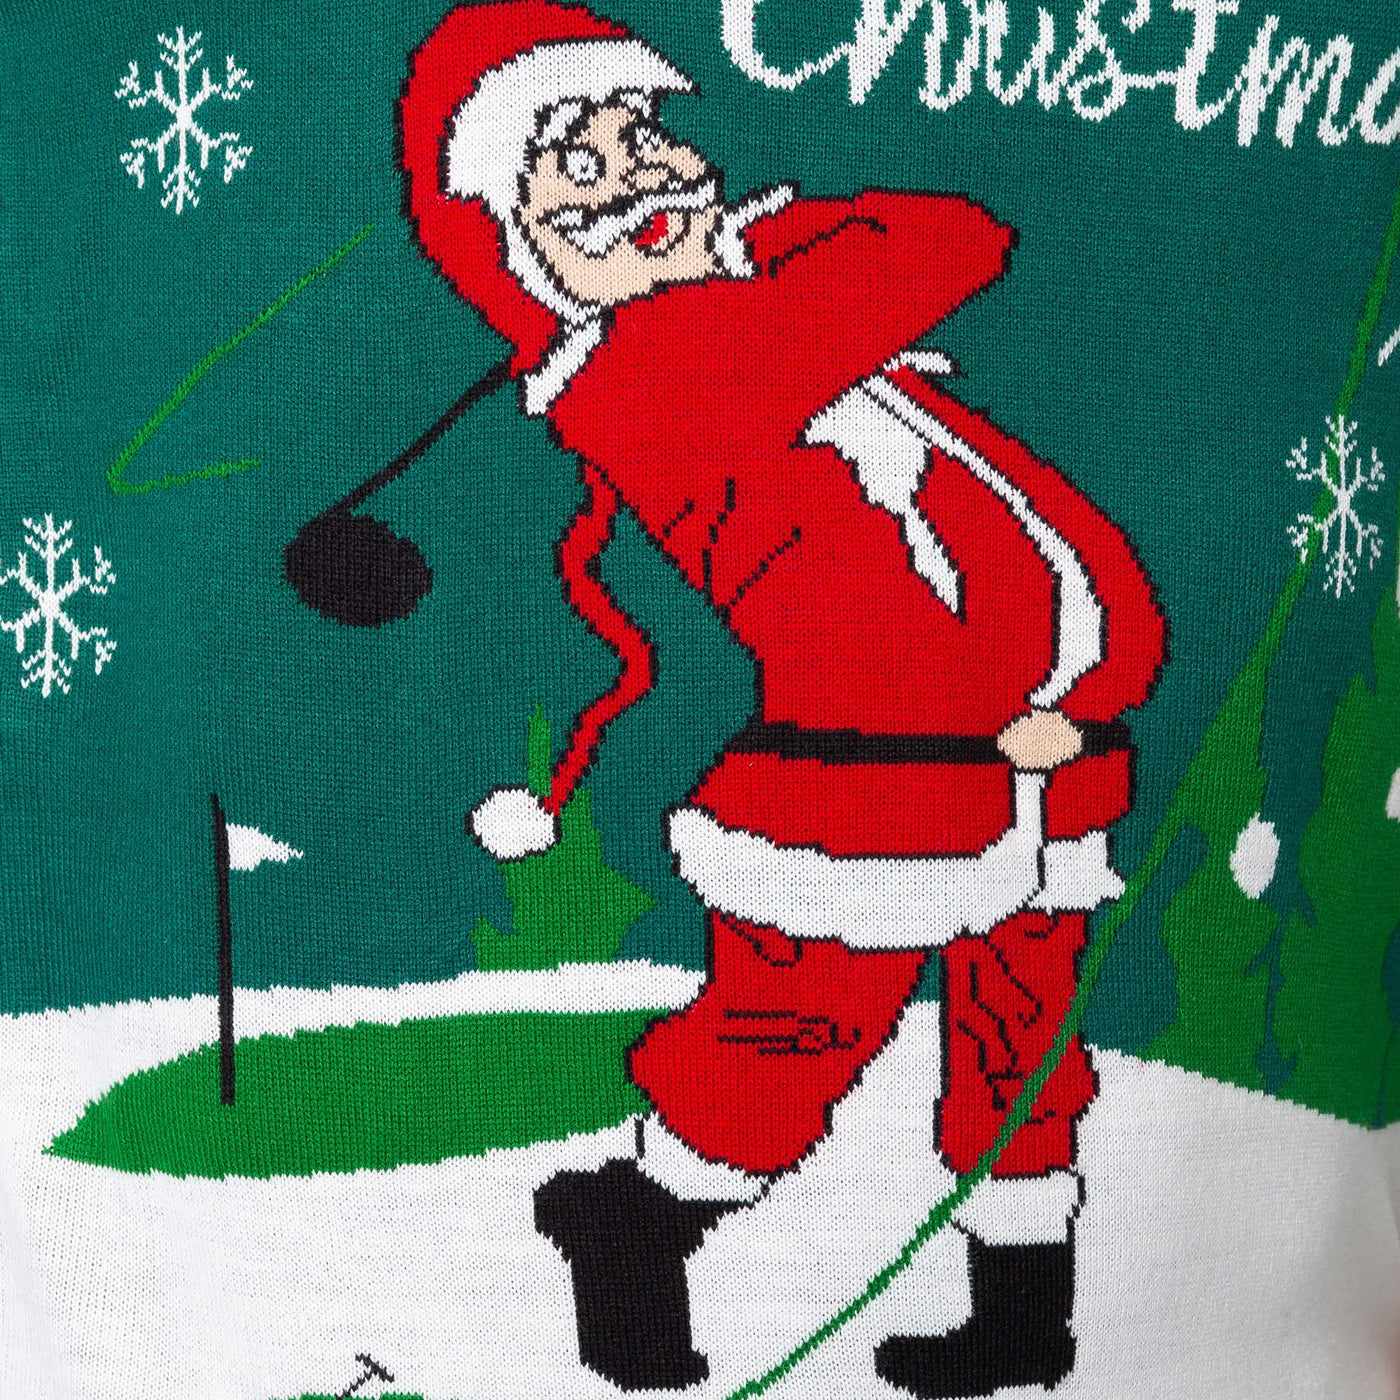 Men's Santa Golfer Christmas Sweater